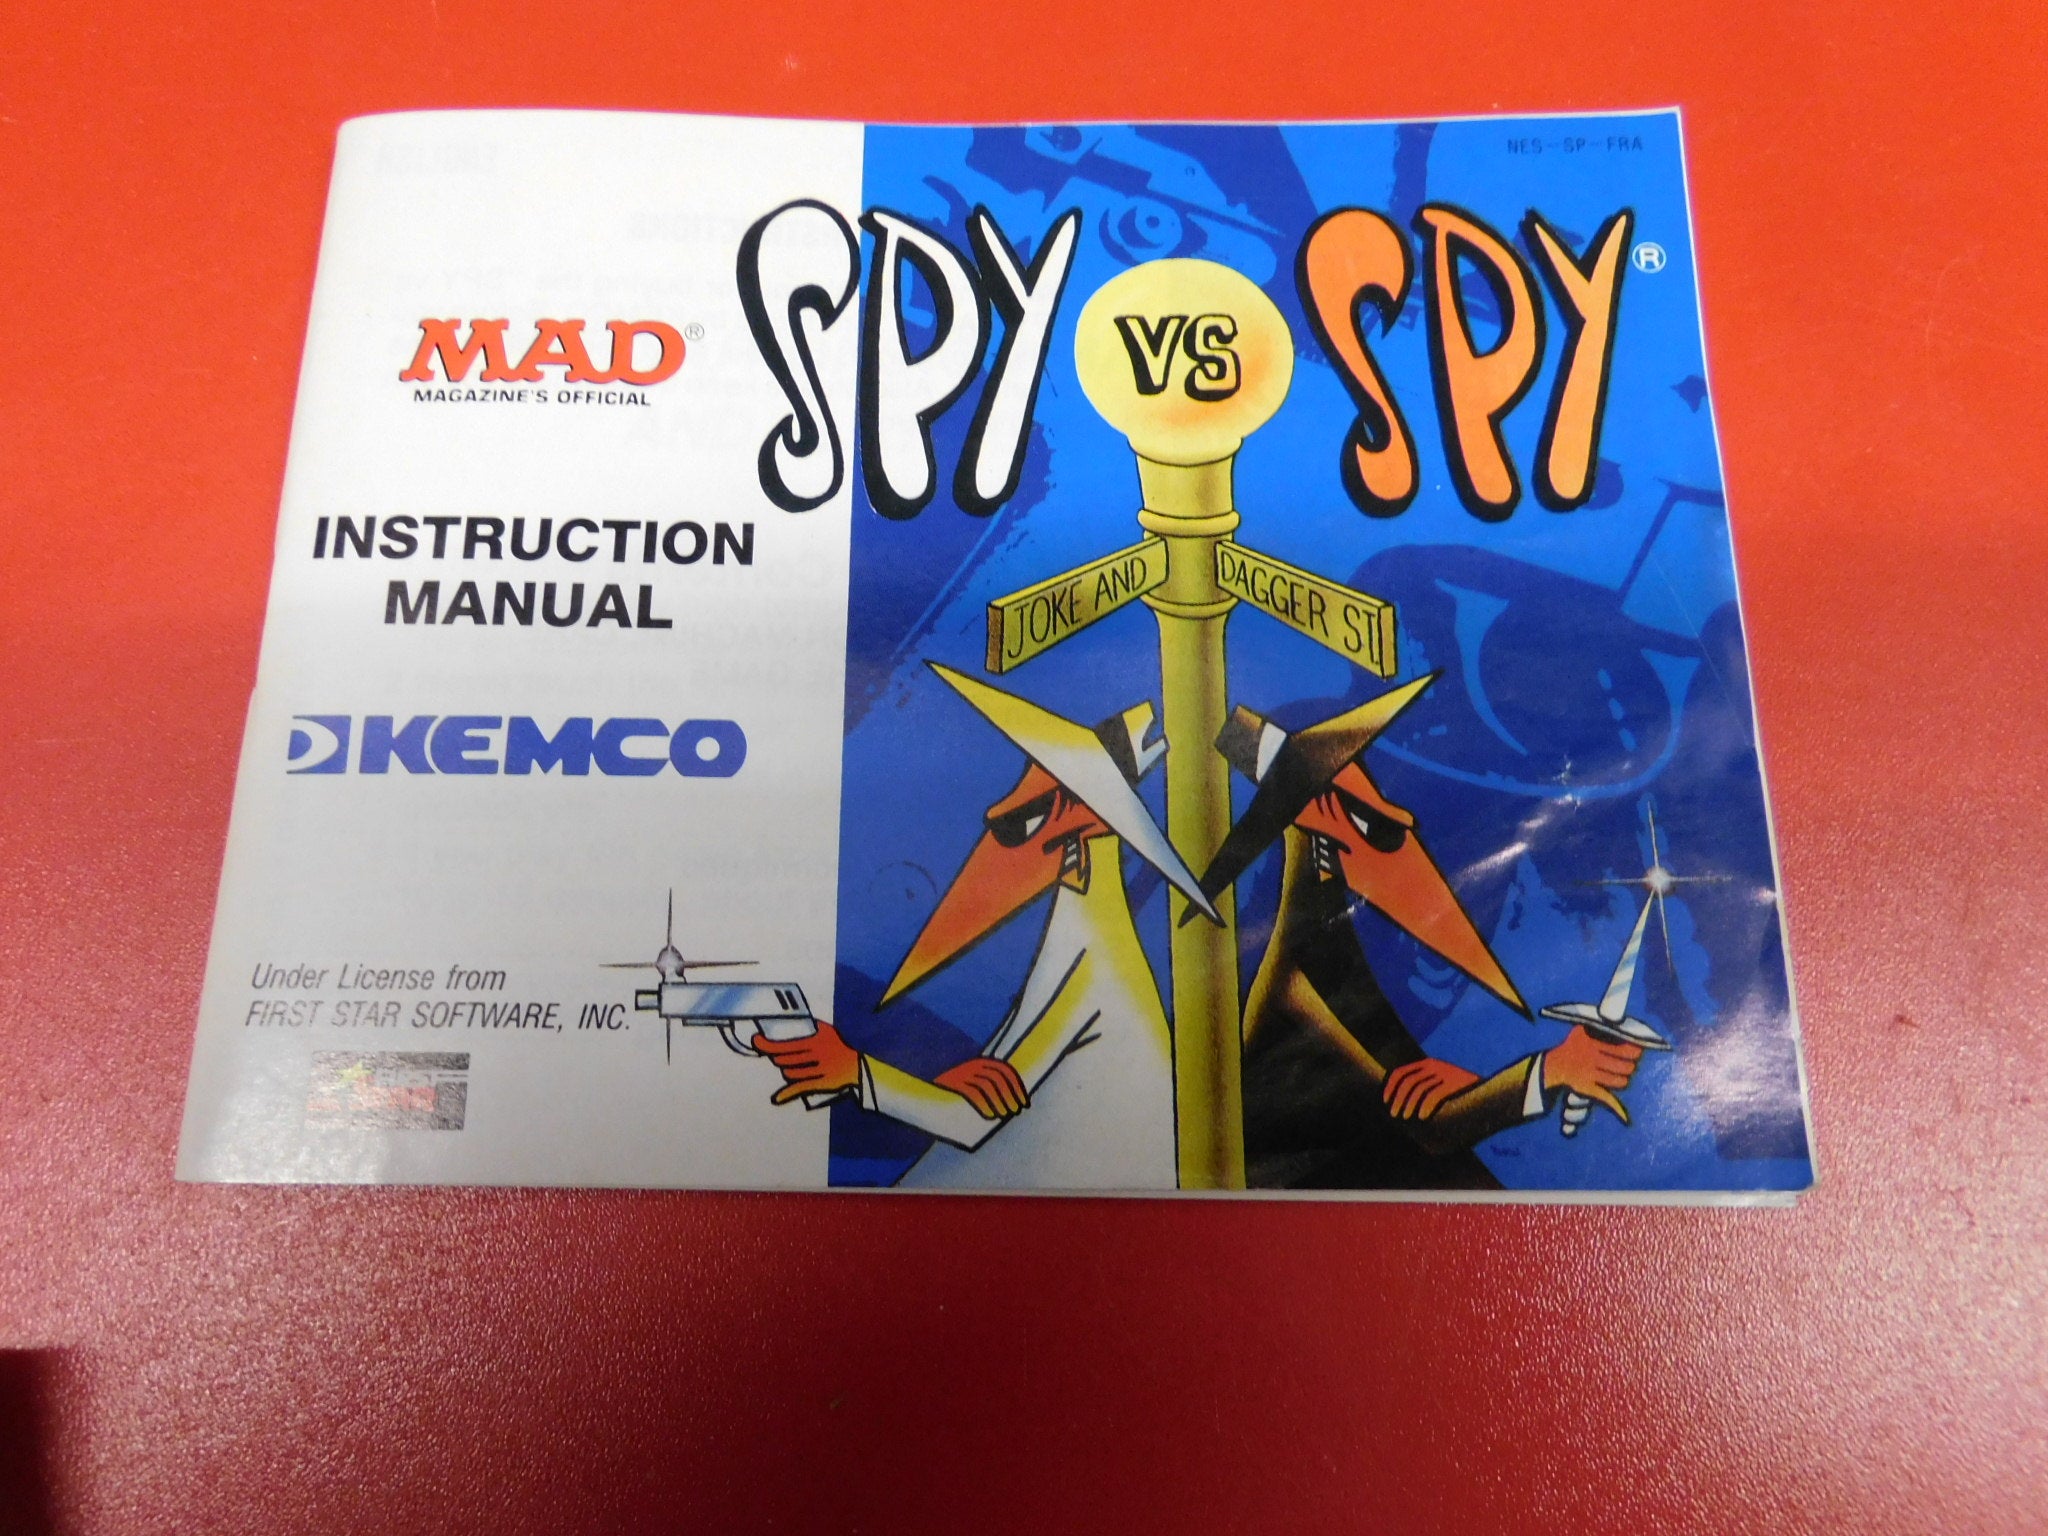 SPY VS SPY